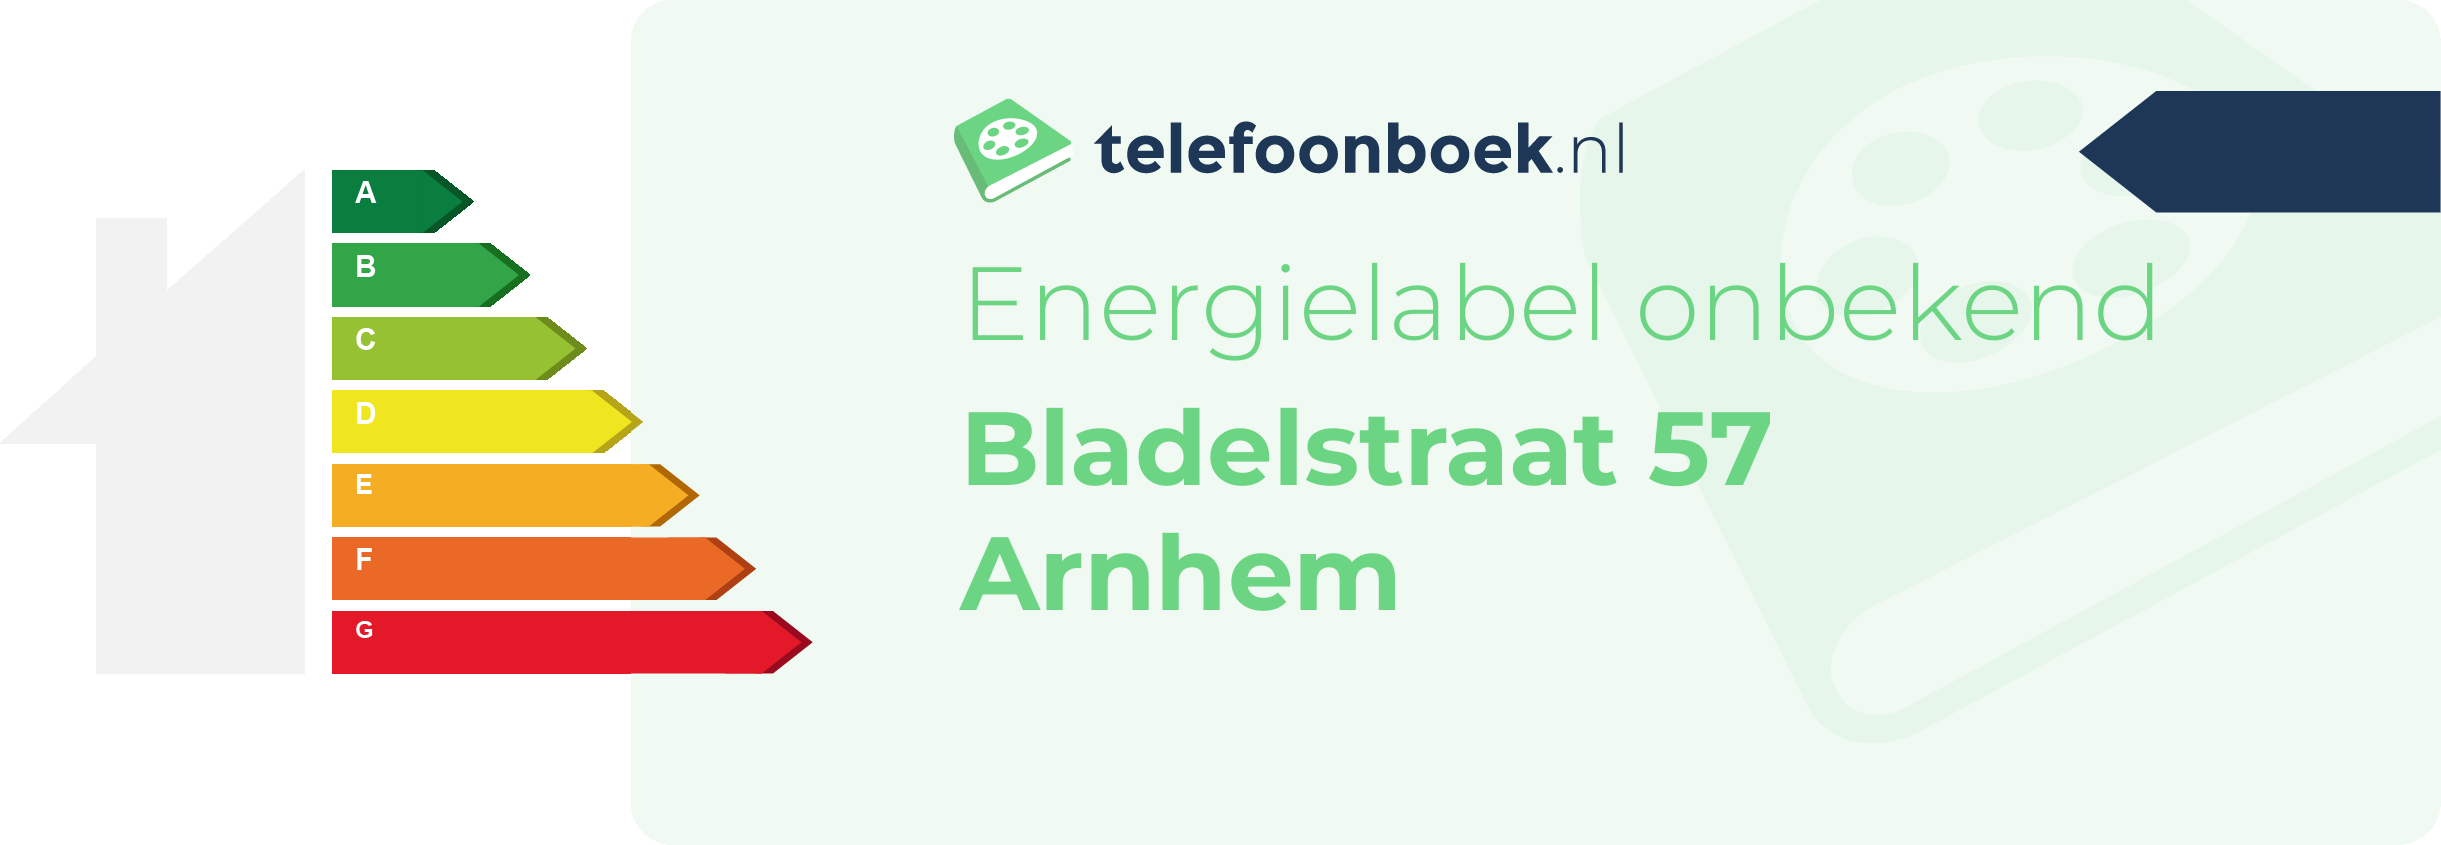 Energielabel Bladelstraat 57 Arnhem